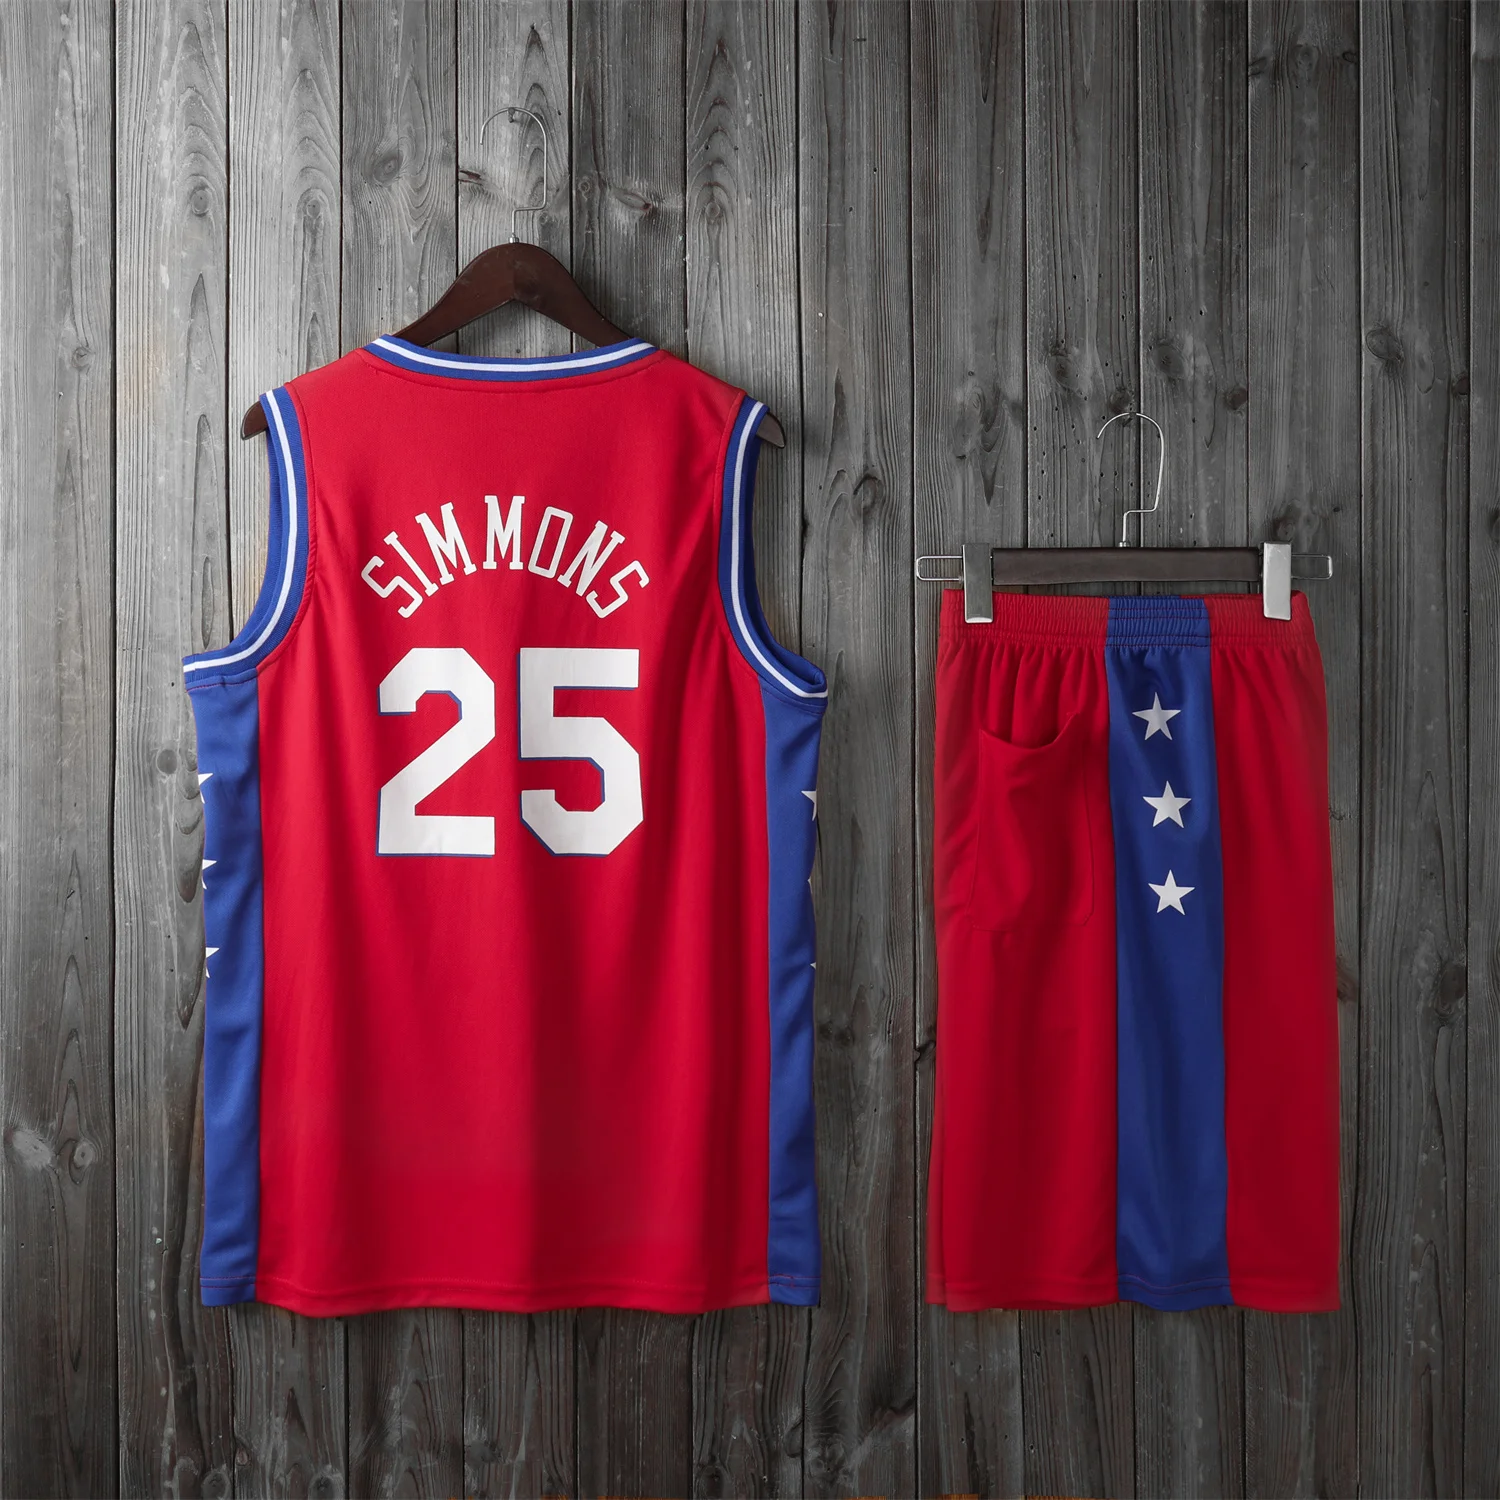 

High Quality USA Basketball Club Player Basketball Uniforms Star SIMMONS 25 Has Team Logo Basketball Jerseys